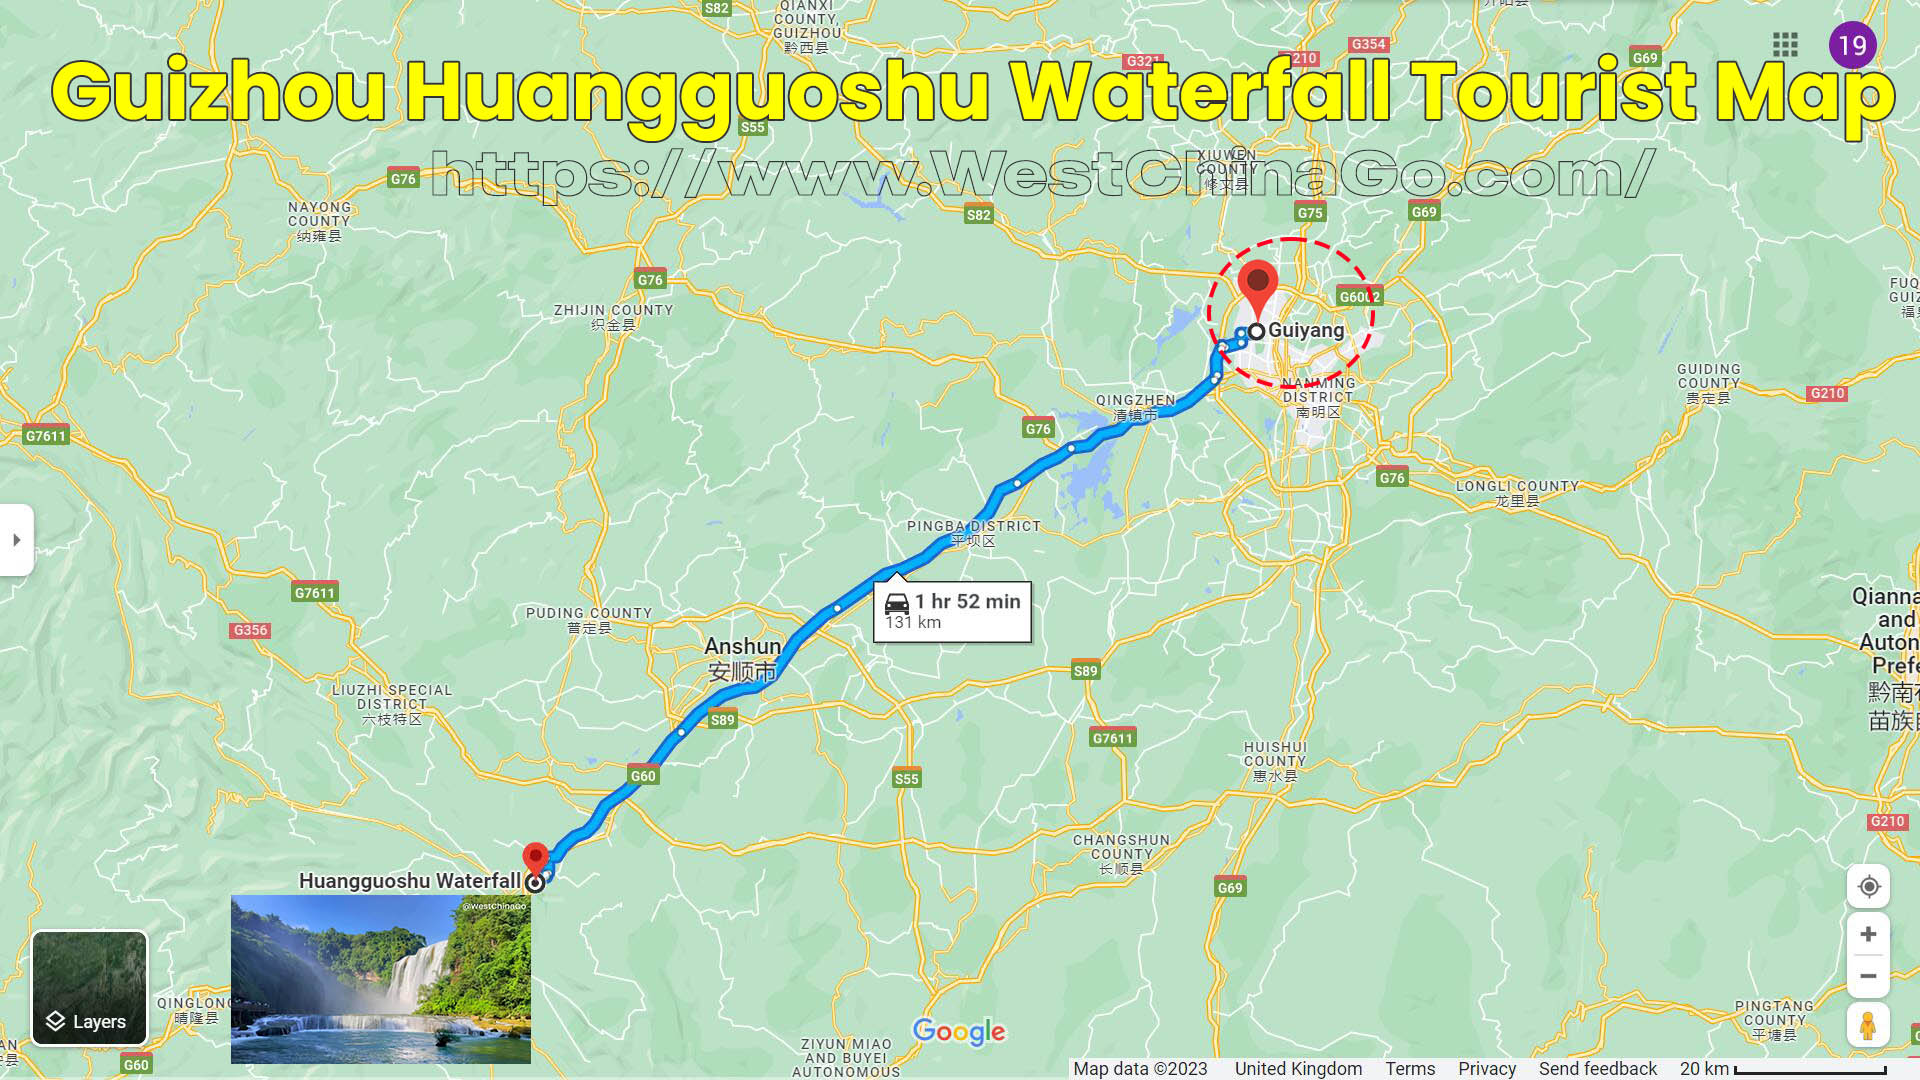 Guizhou Huangguoshu Waterfall Toruist Map